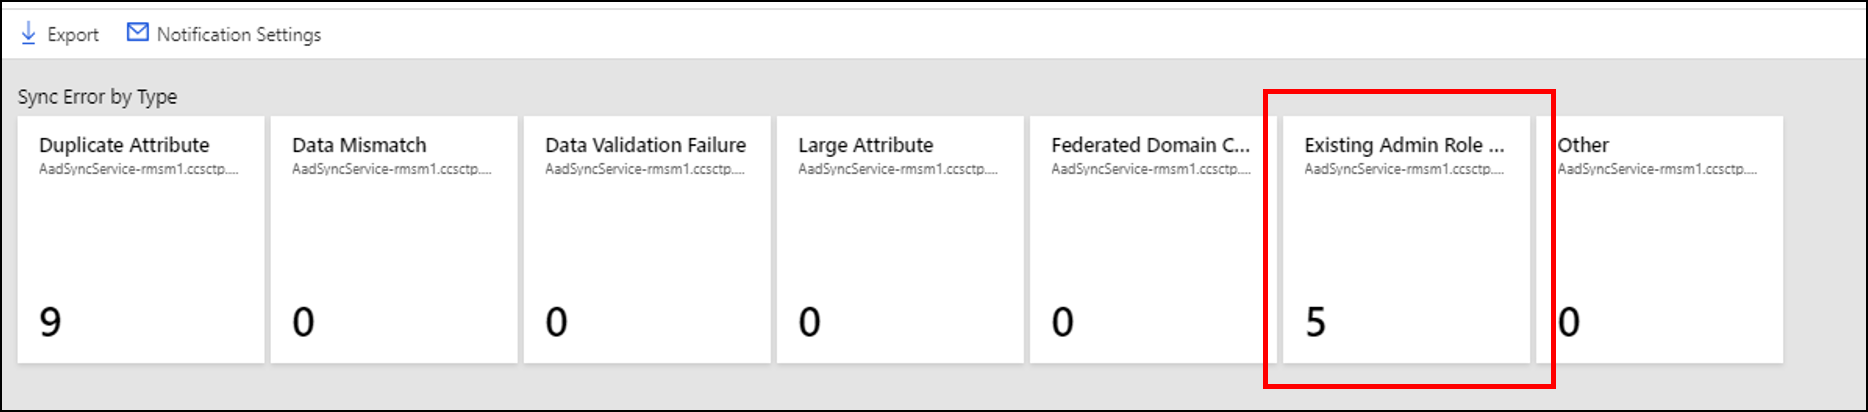 Captura de pantalla que muestra el número de errores de sincronización de Conflicto de rol de administrador existente.